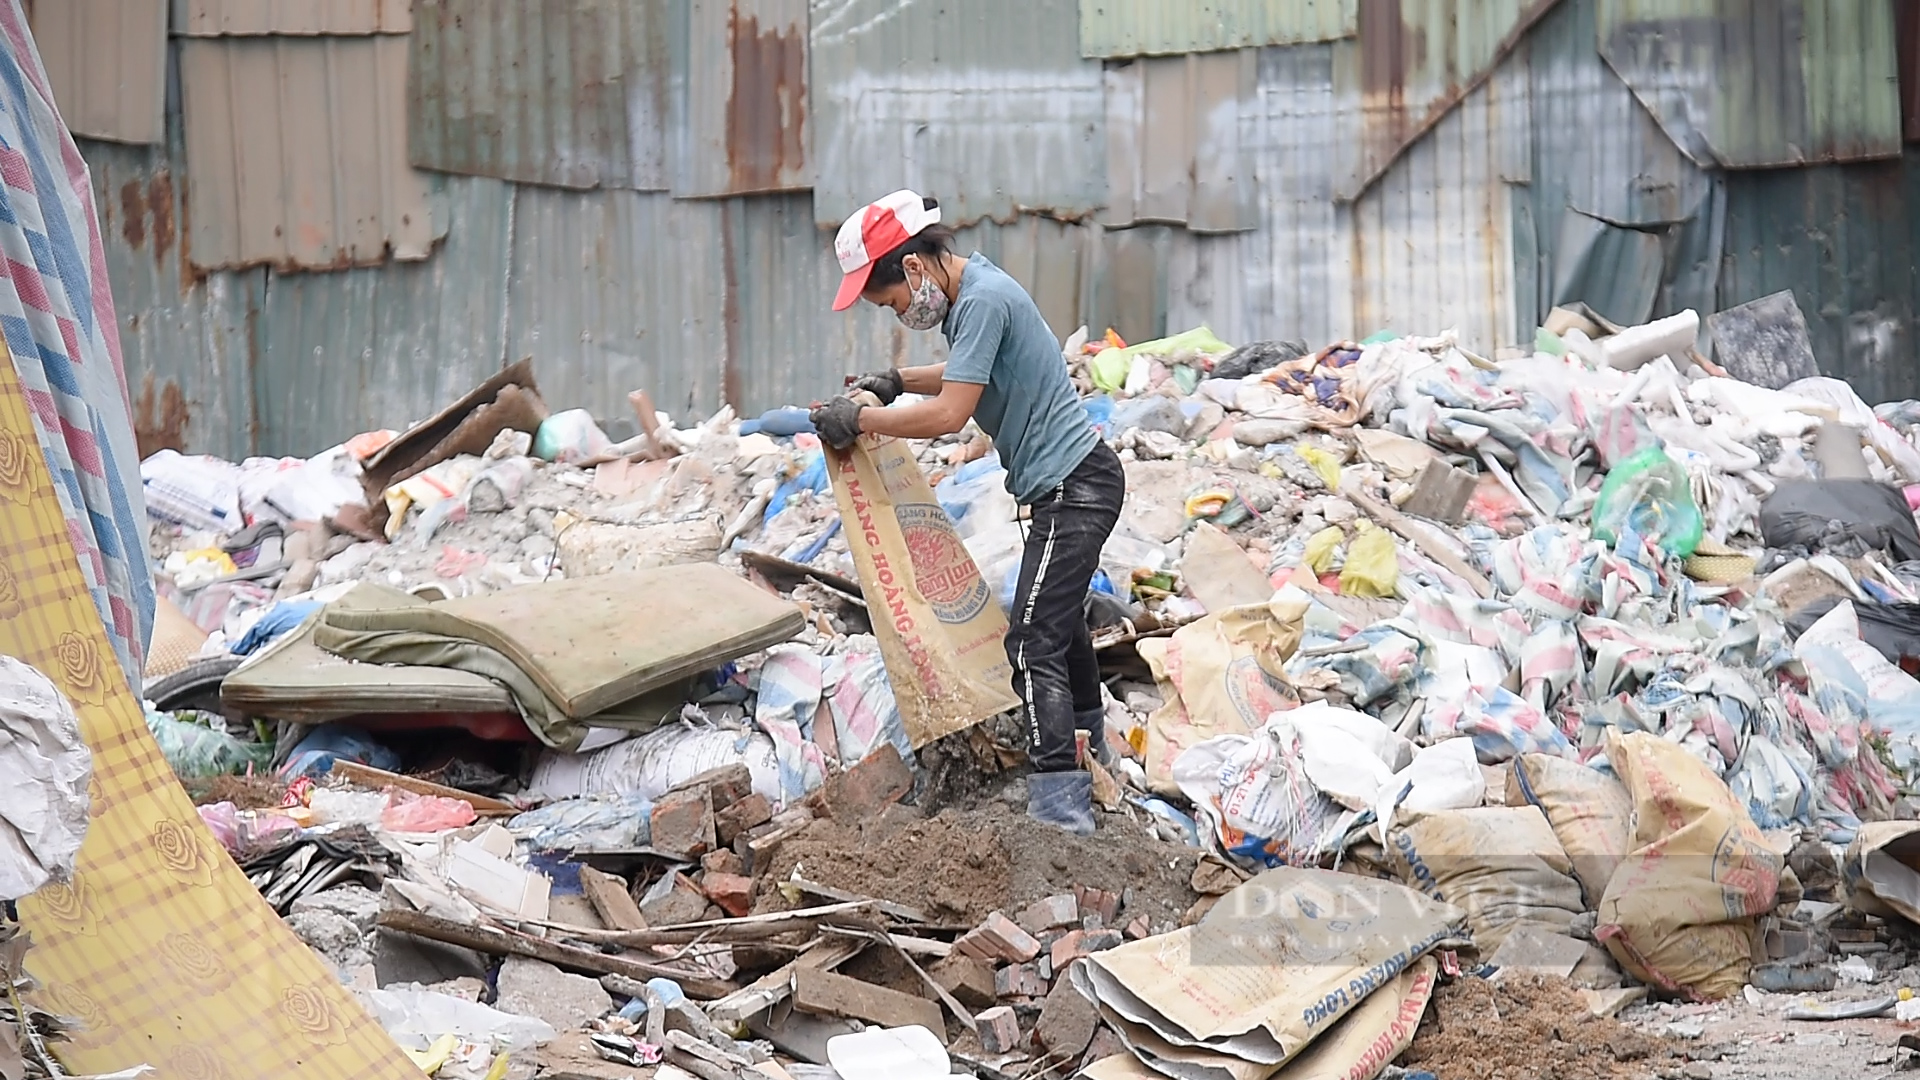 Ngang nhiên đổ rác thải xây dựng giữa ban ngày trong khu dân cư - Ảnh 11.